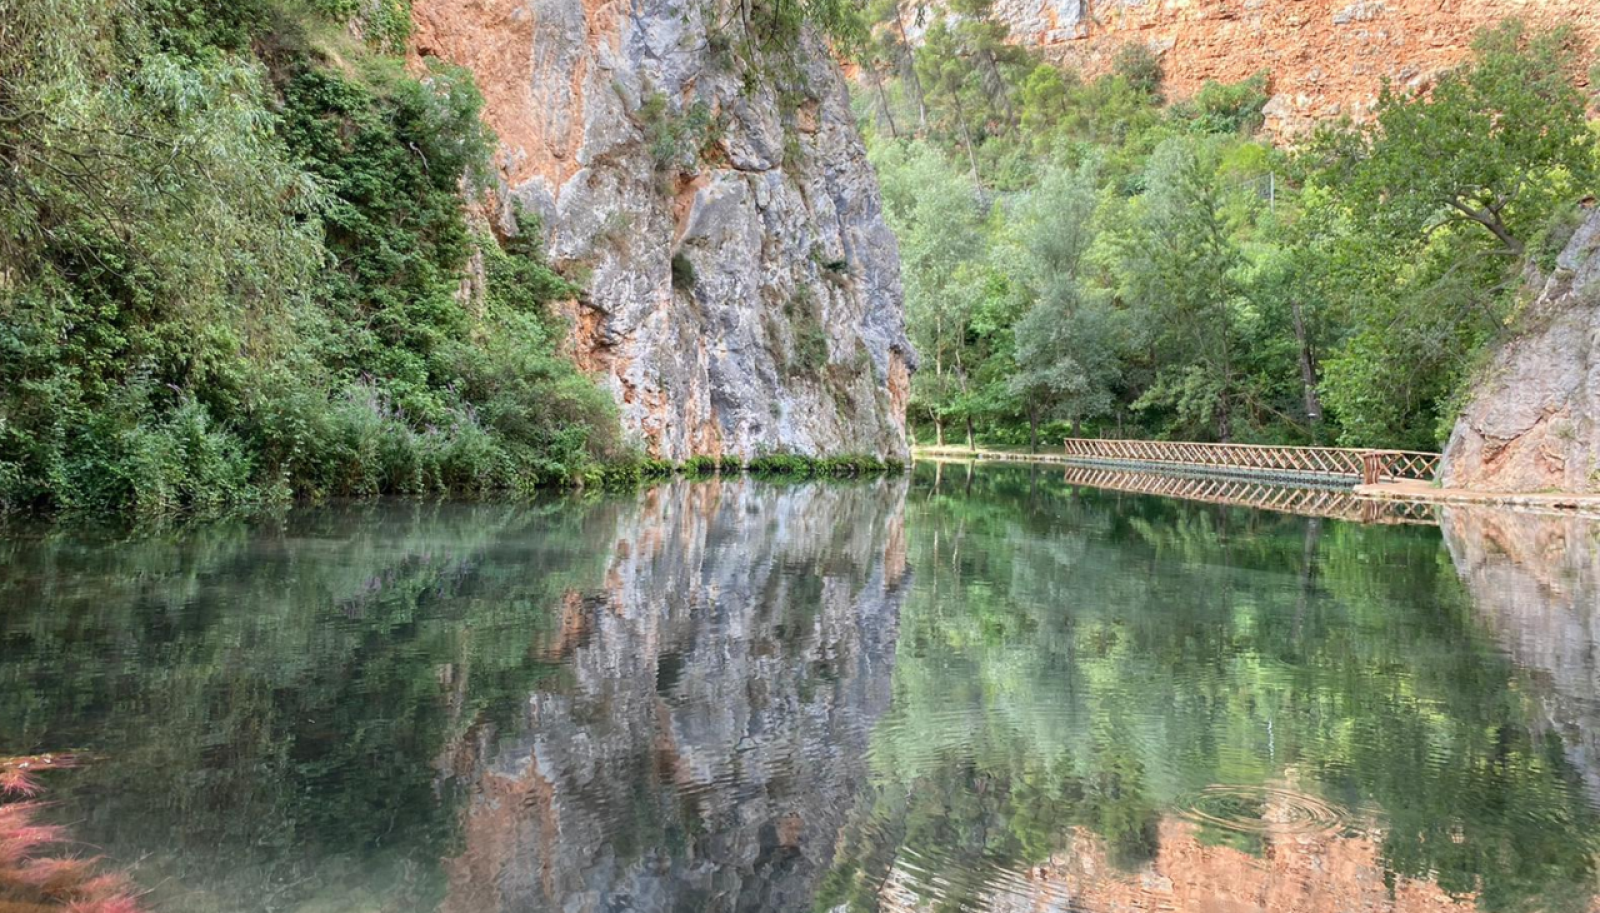 La primera piscifactoría de España se fundó en el Monasterio de Piedra